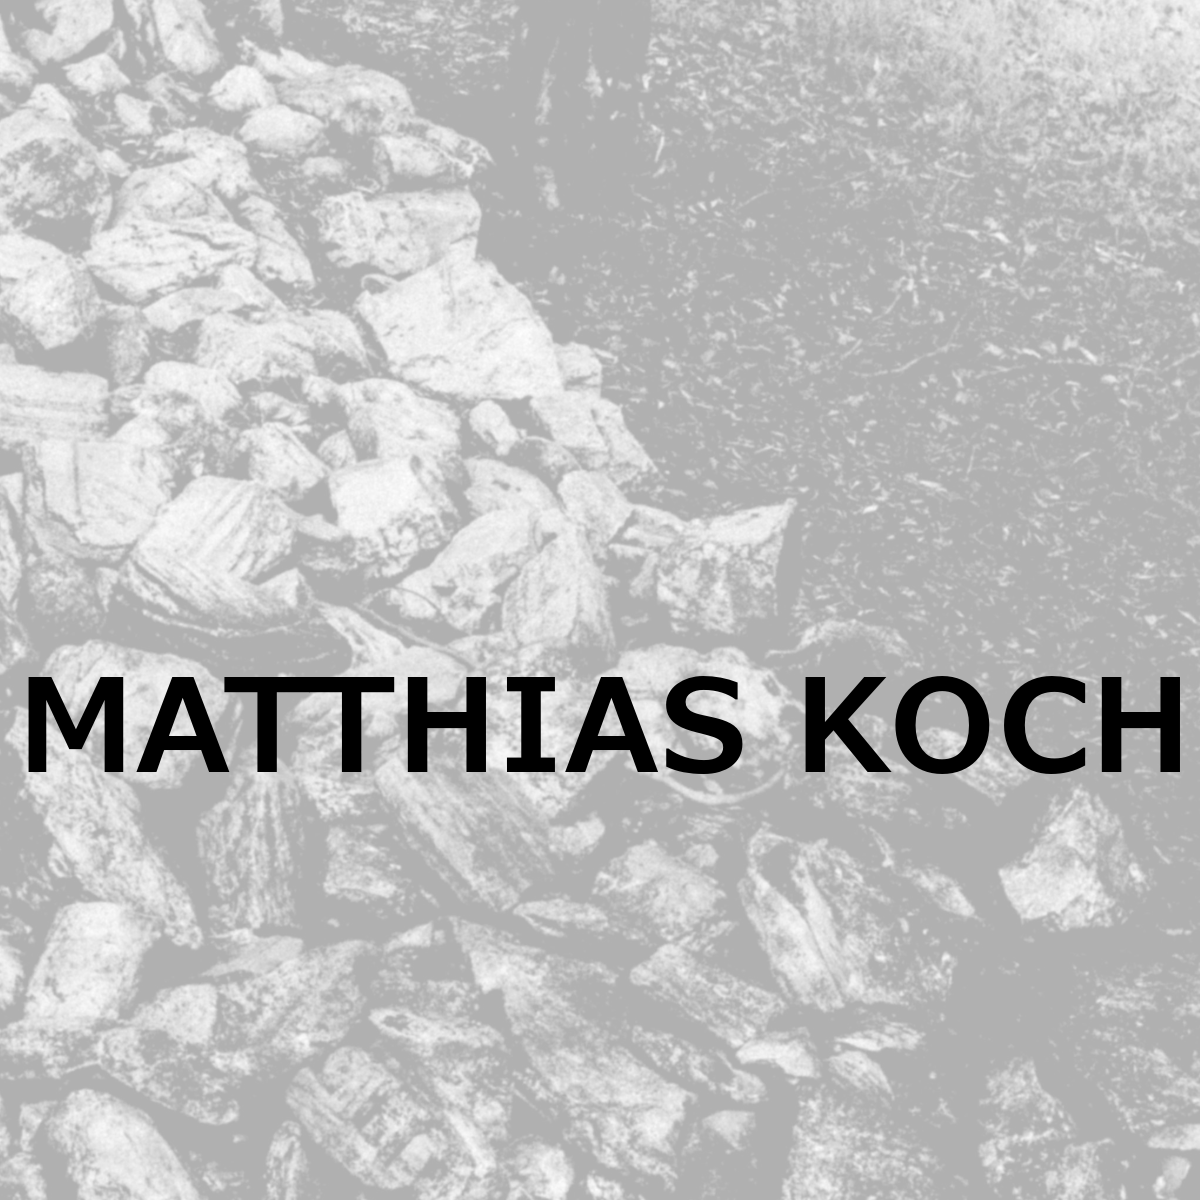 MATTHIAS KOCH